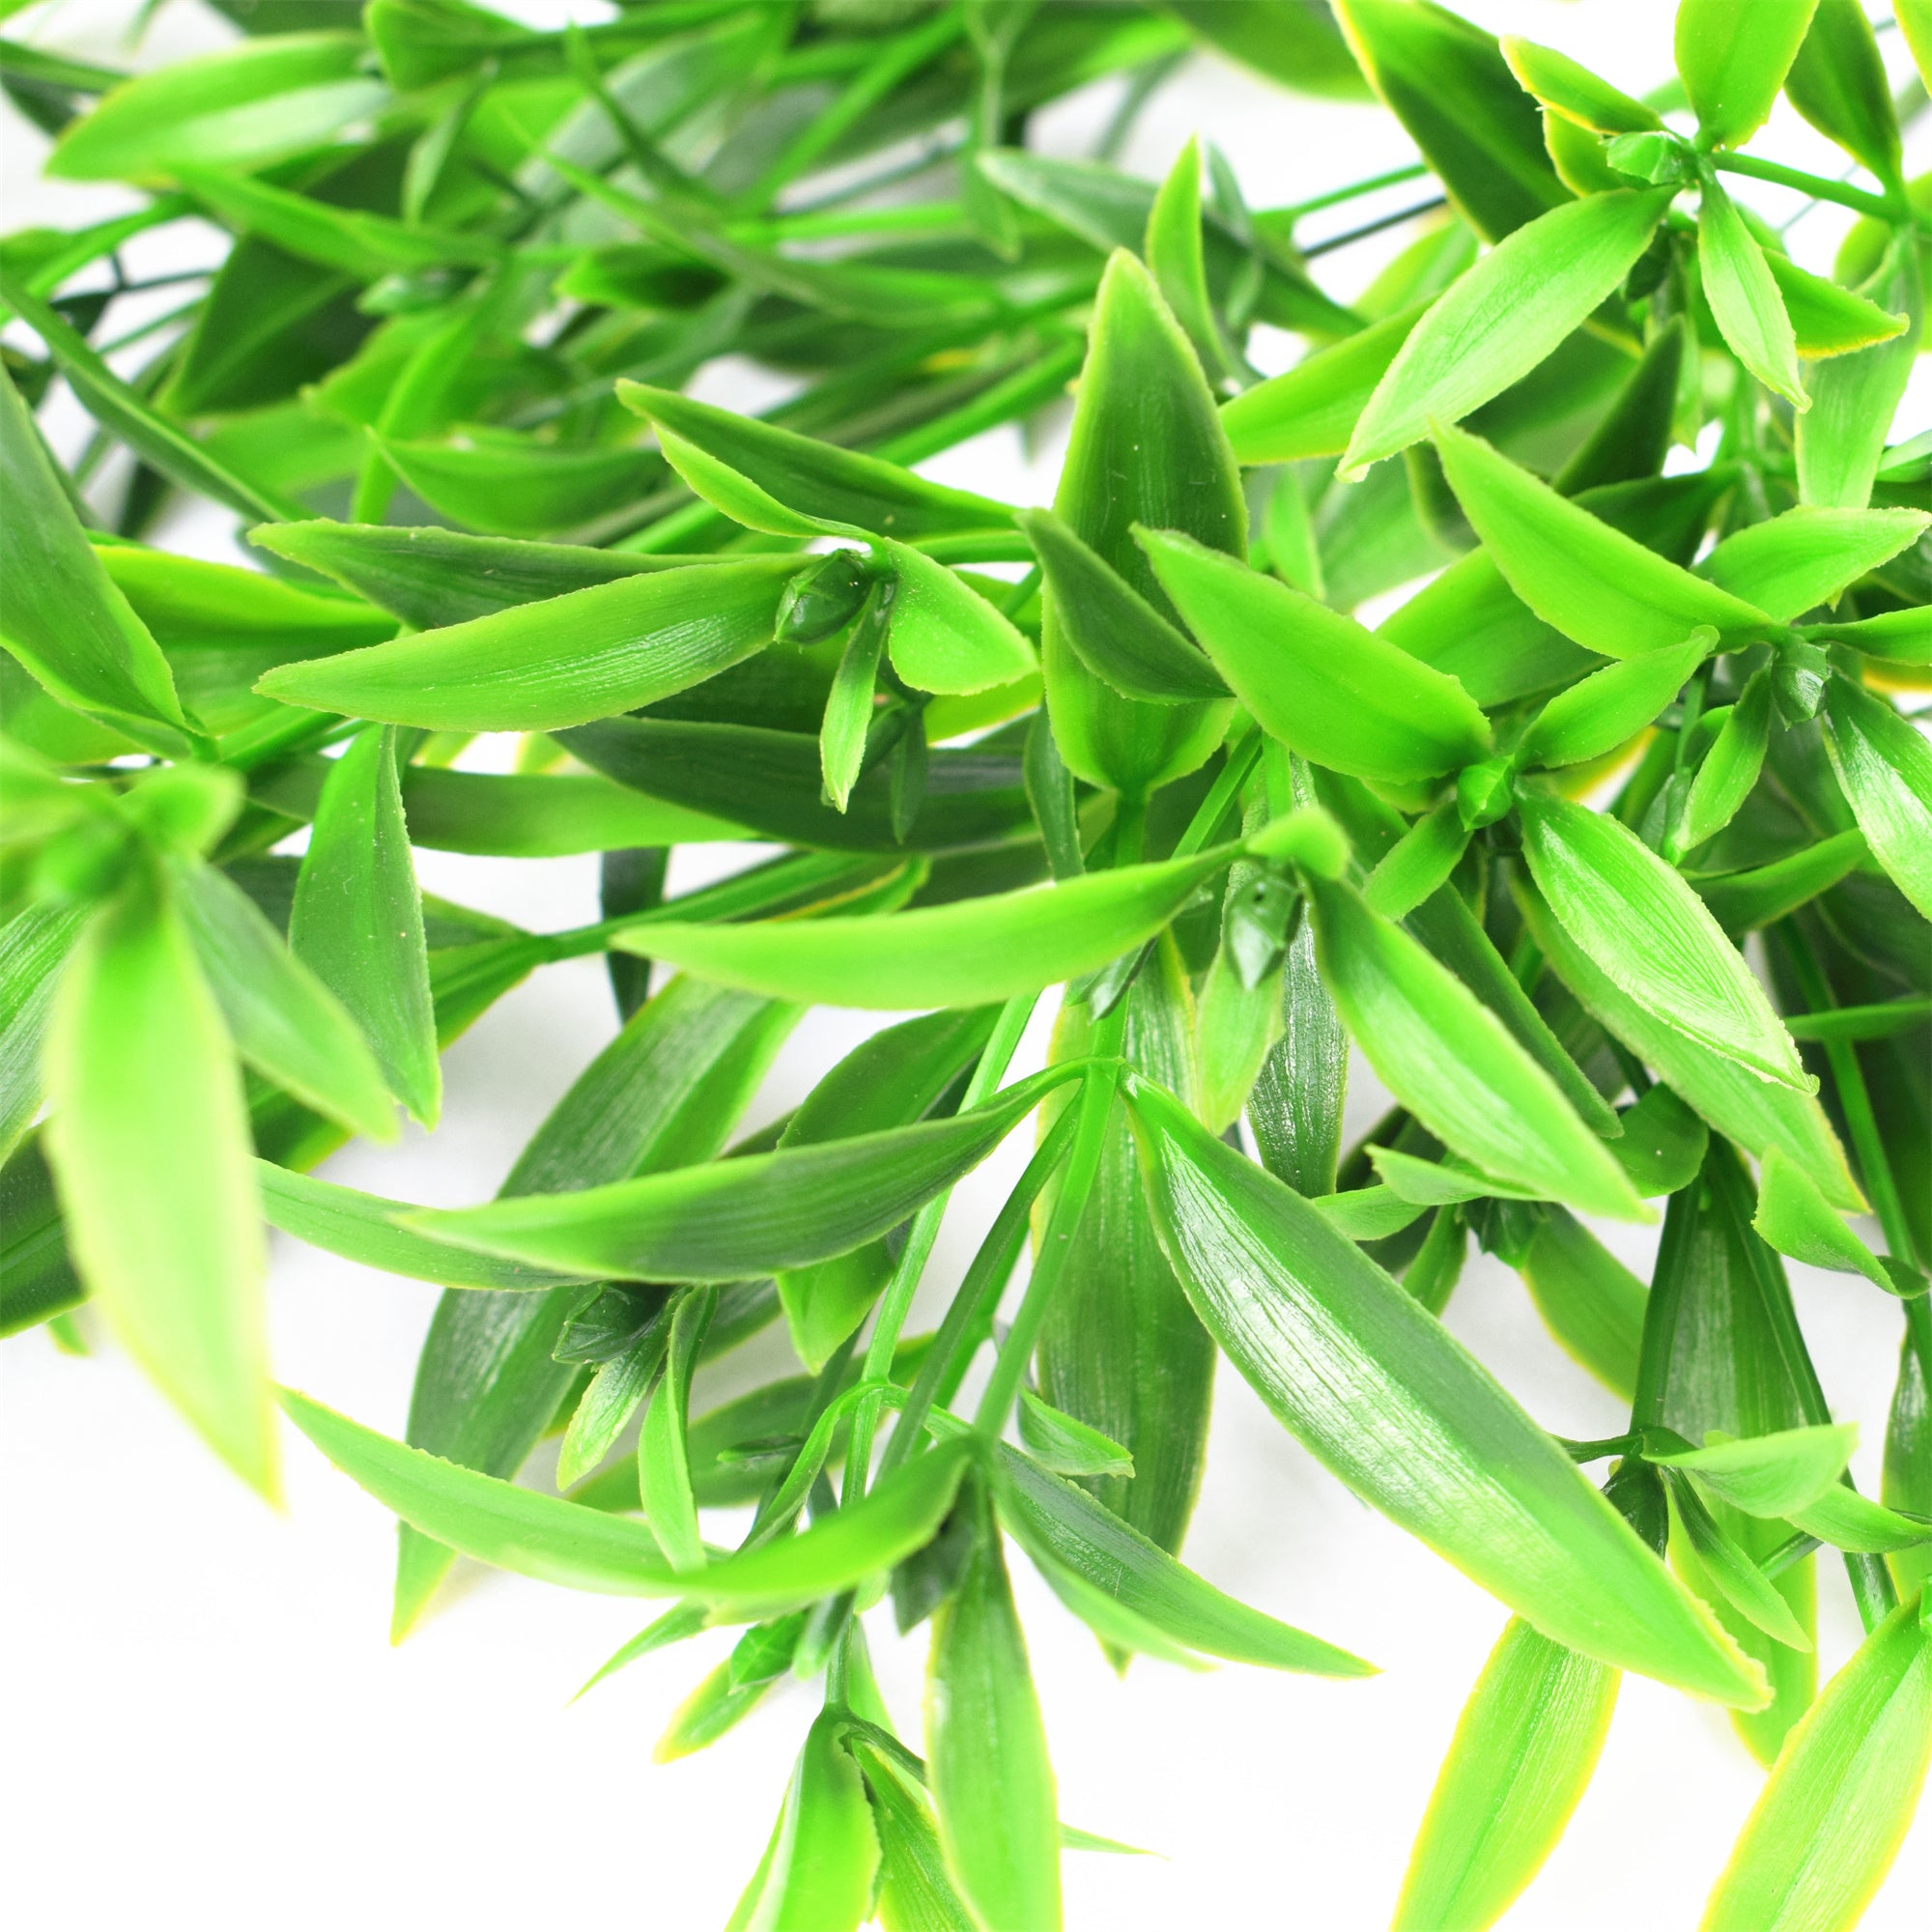 Hierba artificial hoja puntiaguda verde, rama decorativa de 40 cm con protección UV